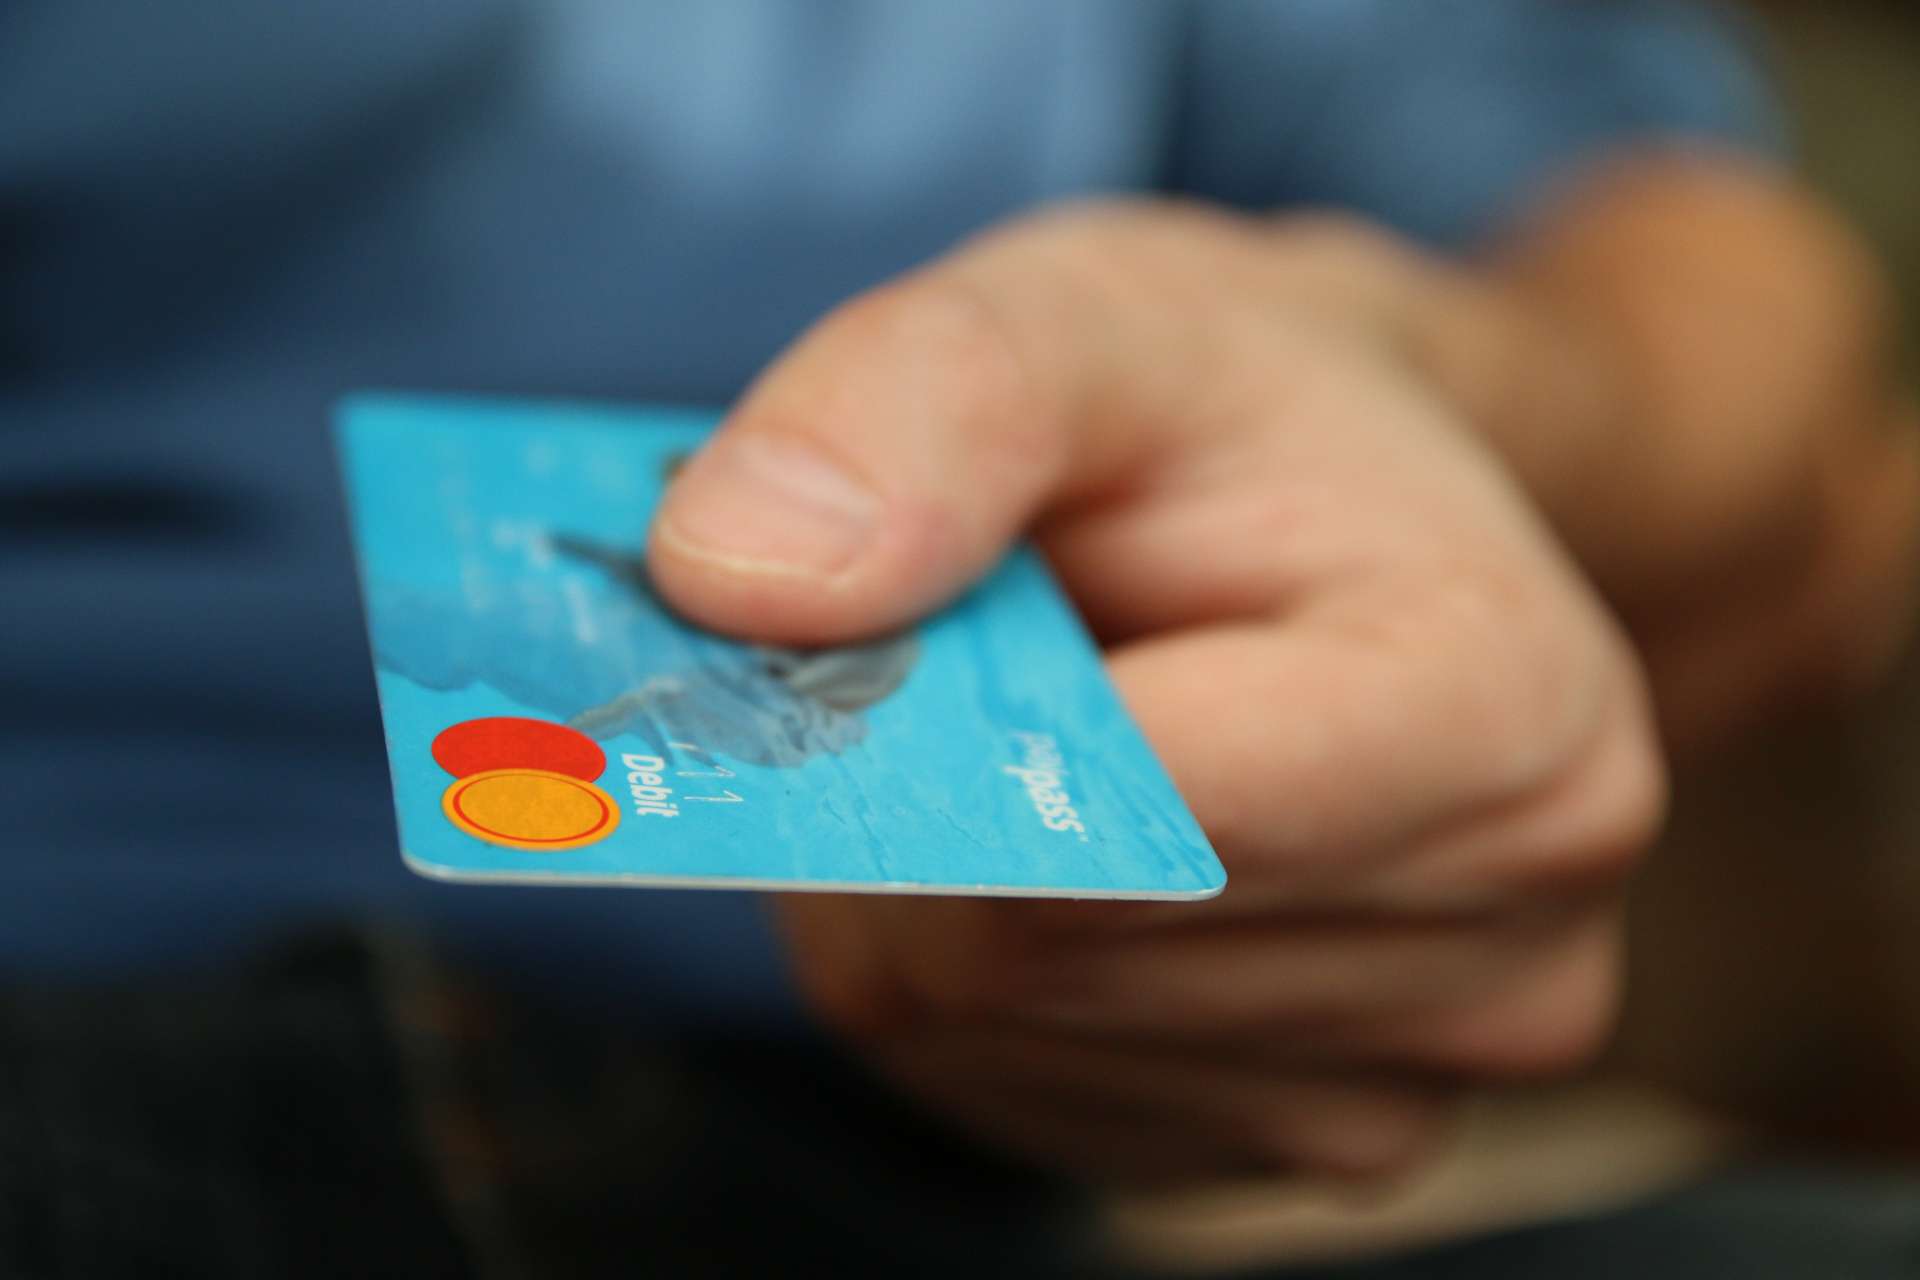 Waarop moet je letten bij de aanschaf van een creditcard?